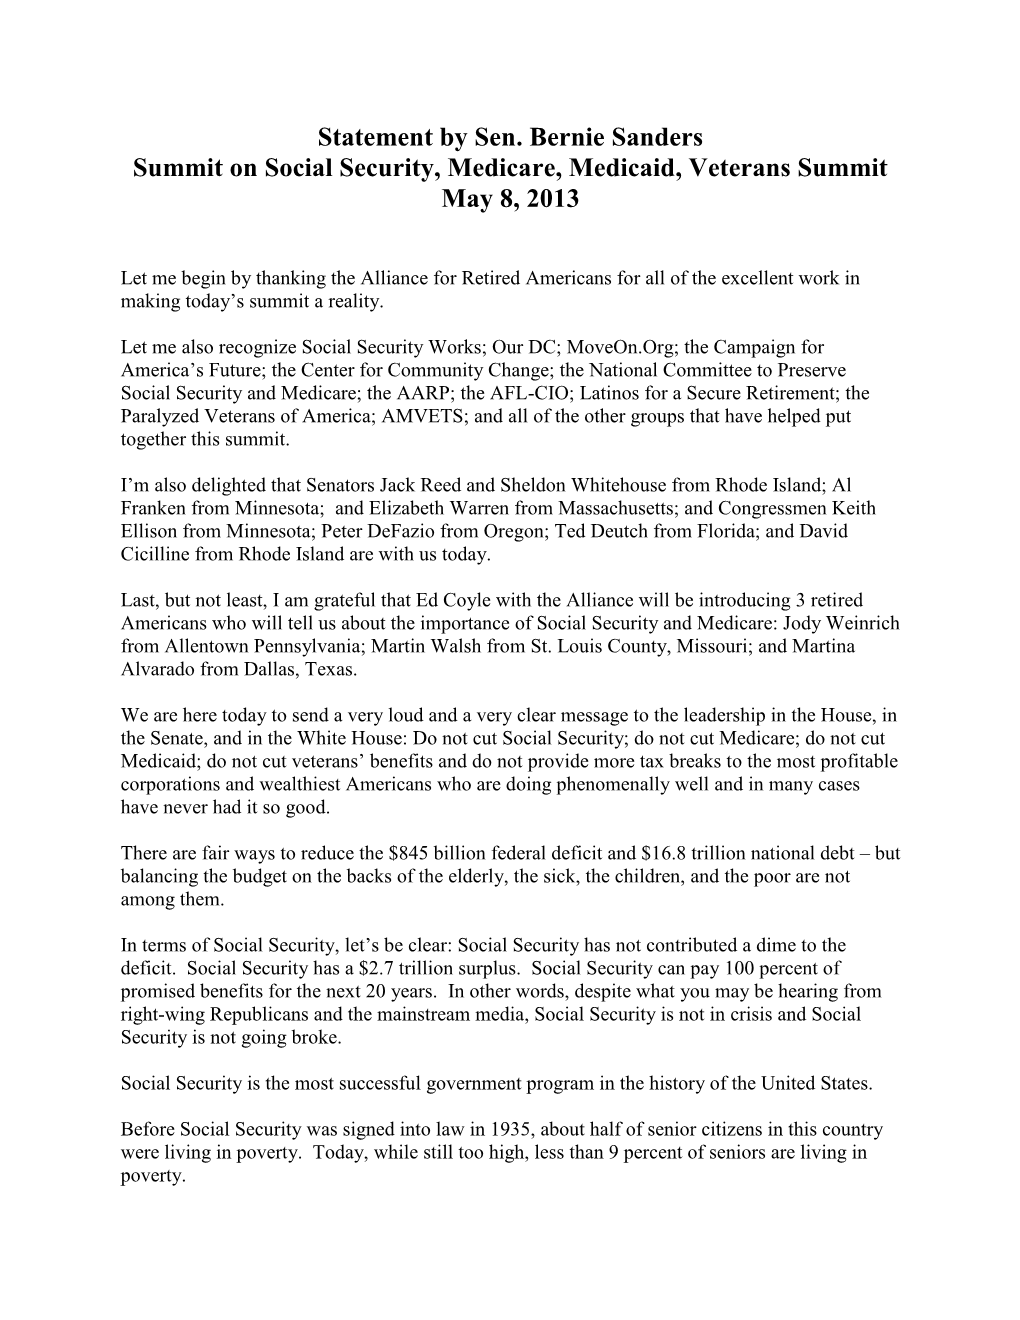 Statement by Sen. Bernie Sanders Summit on Social Security, Medicare, Medicaid, Veterans Summit May 8, 2013